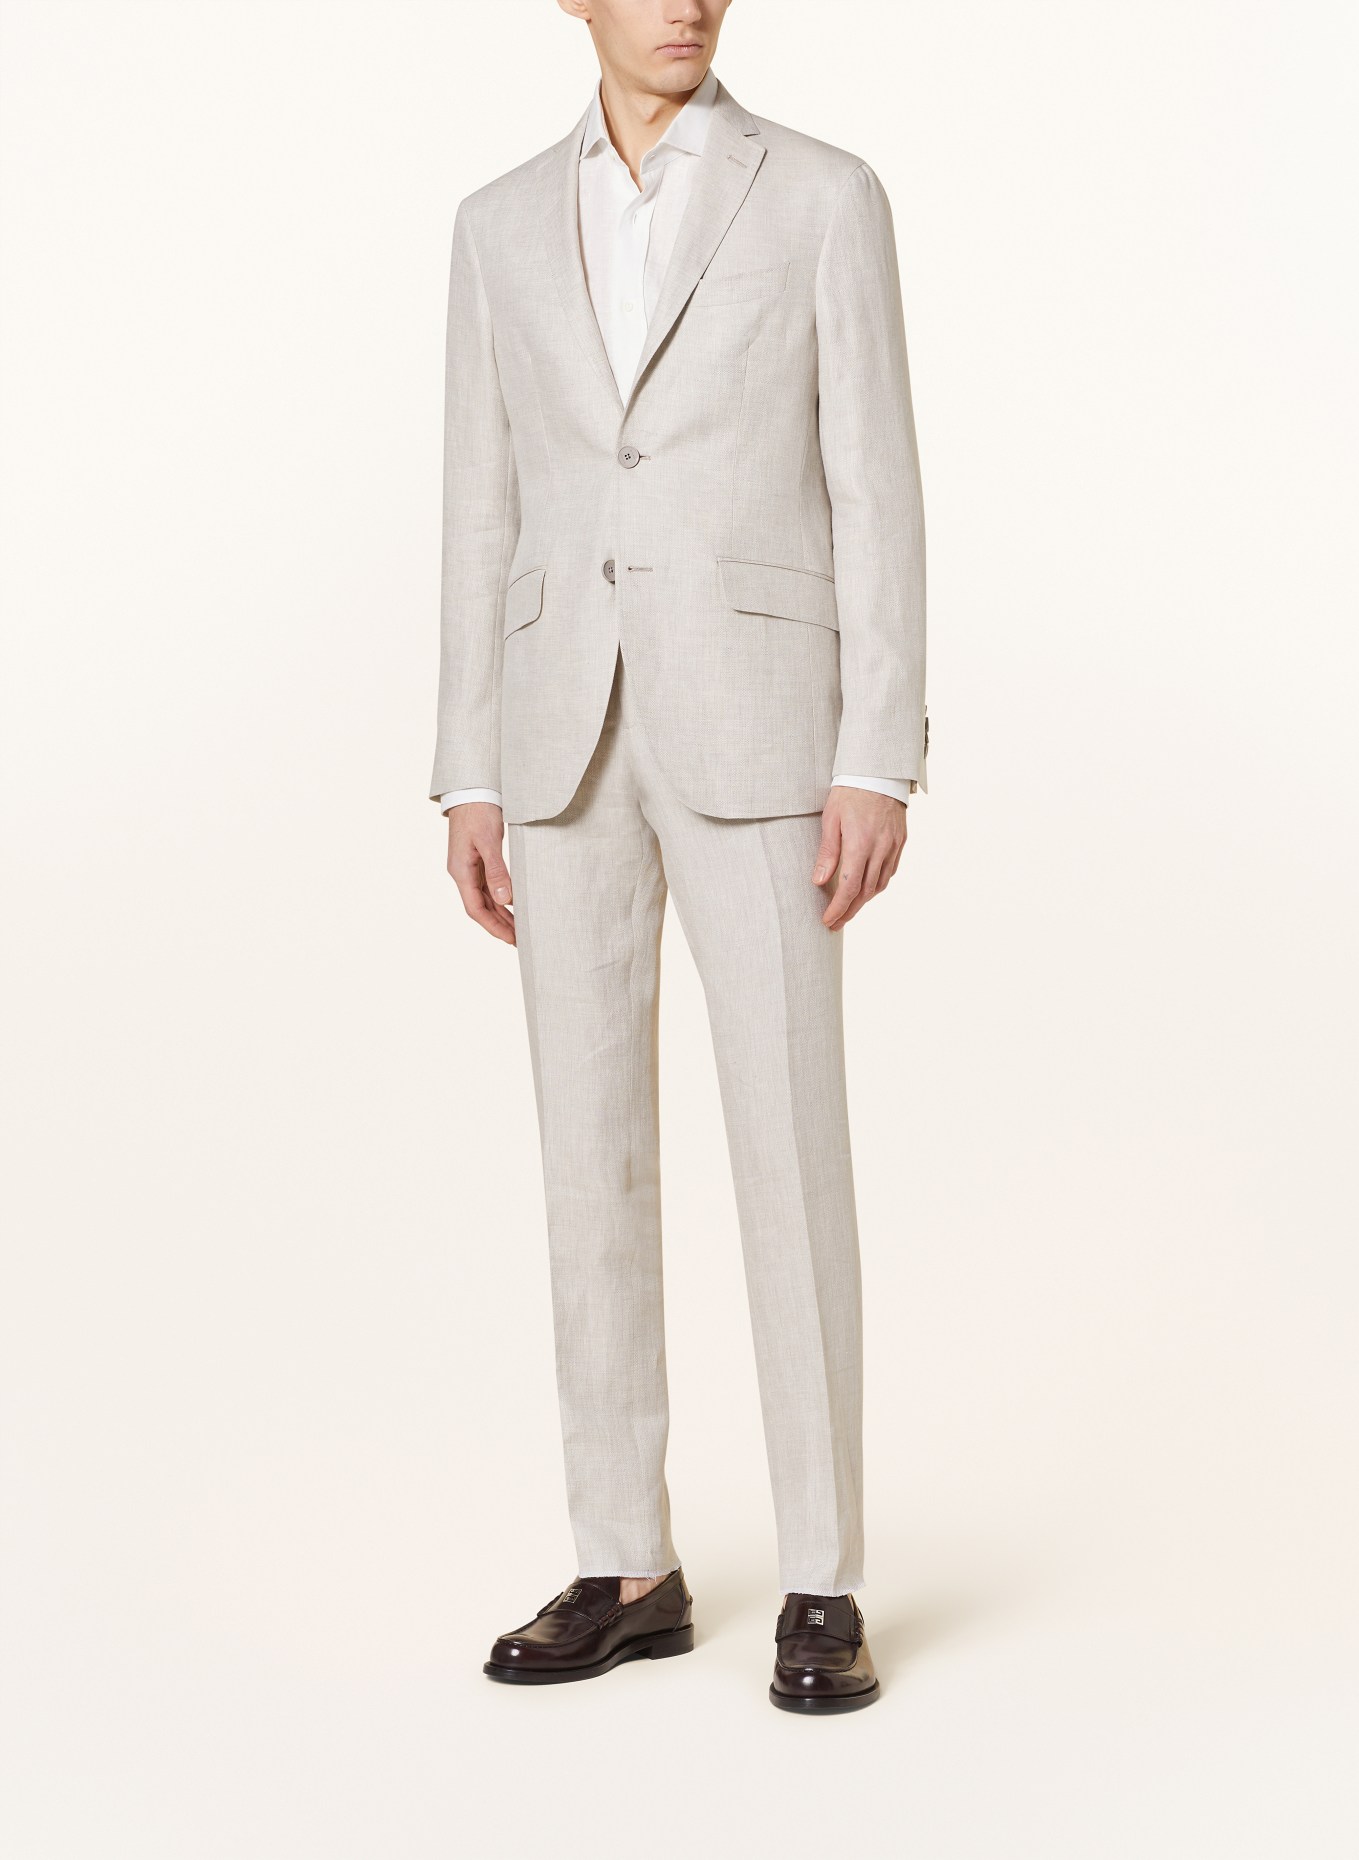 ETRO Suit jacket slim fit in linen, Color: M0633 Light Beige (Image 2)